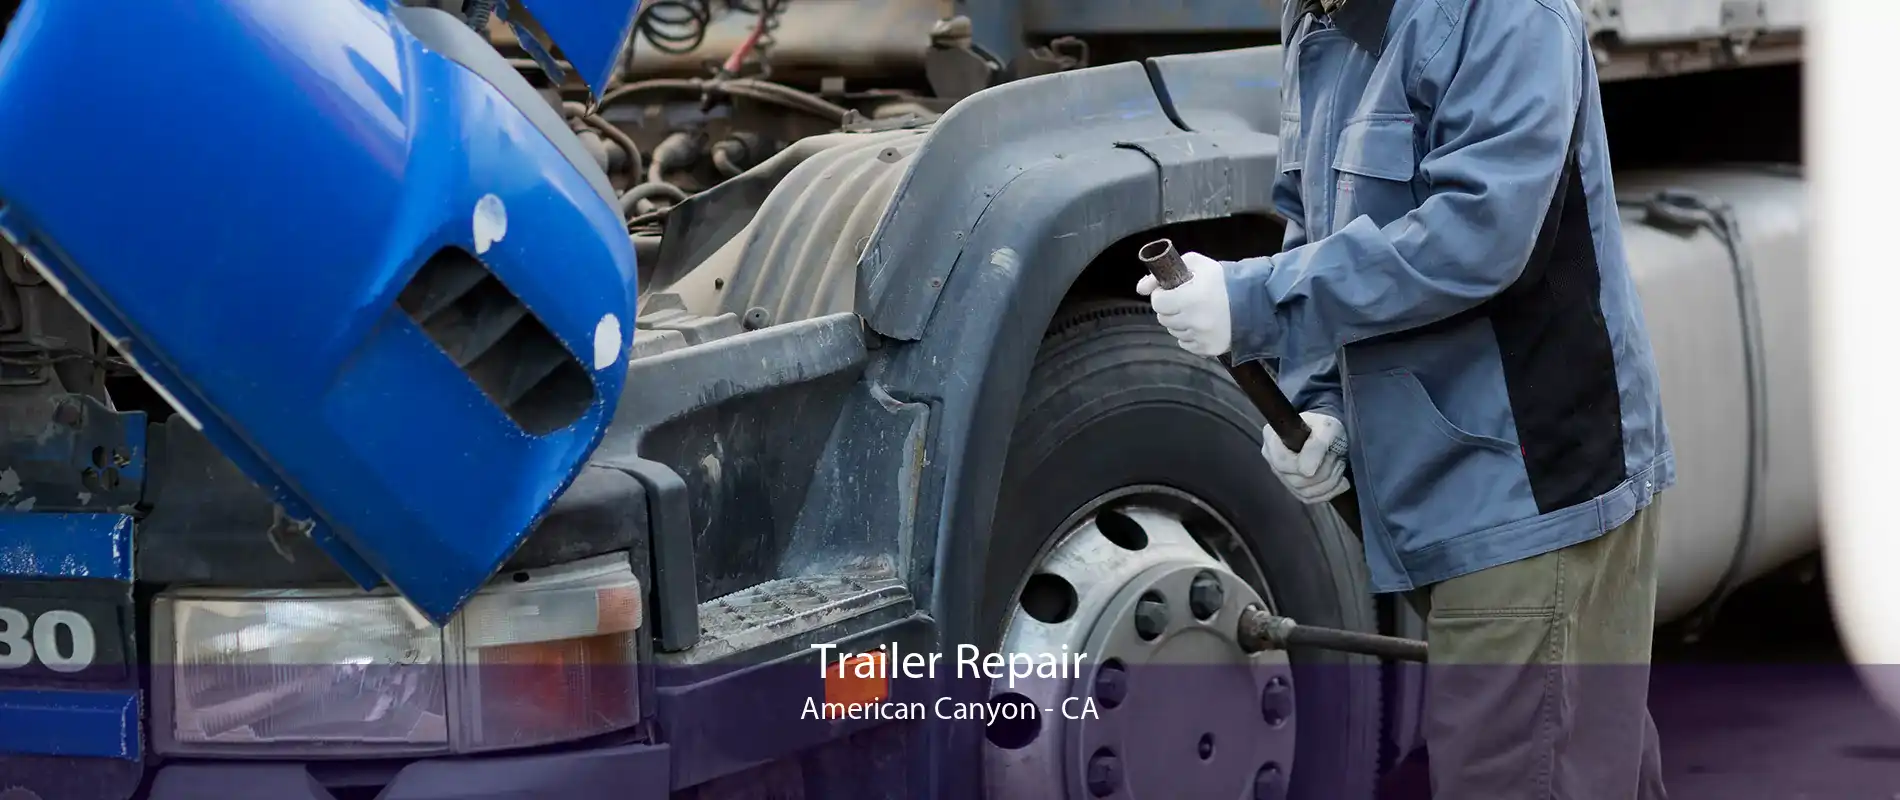 Trailer Repair American Canyon - CA